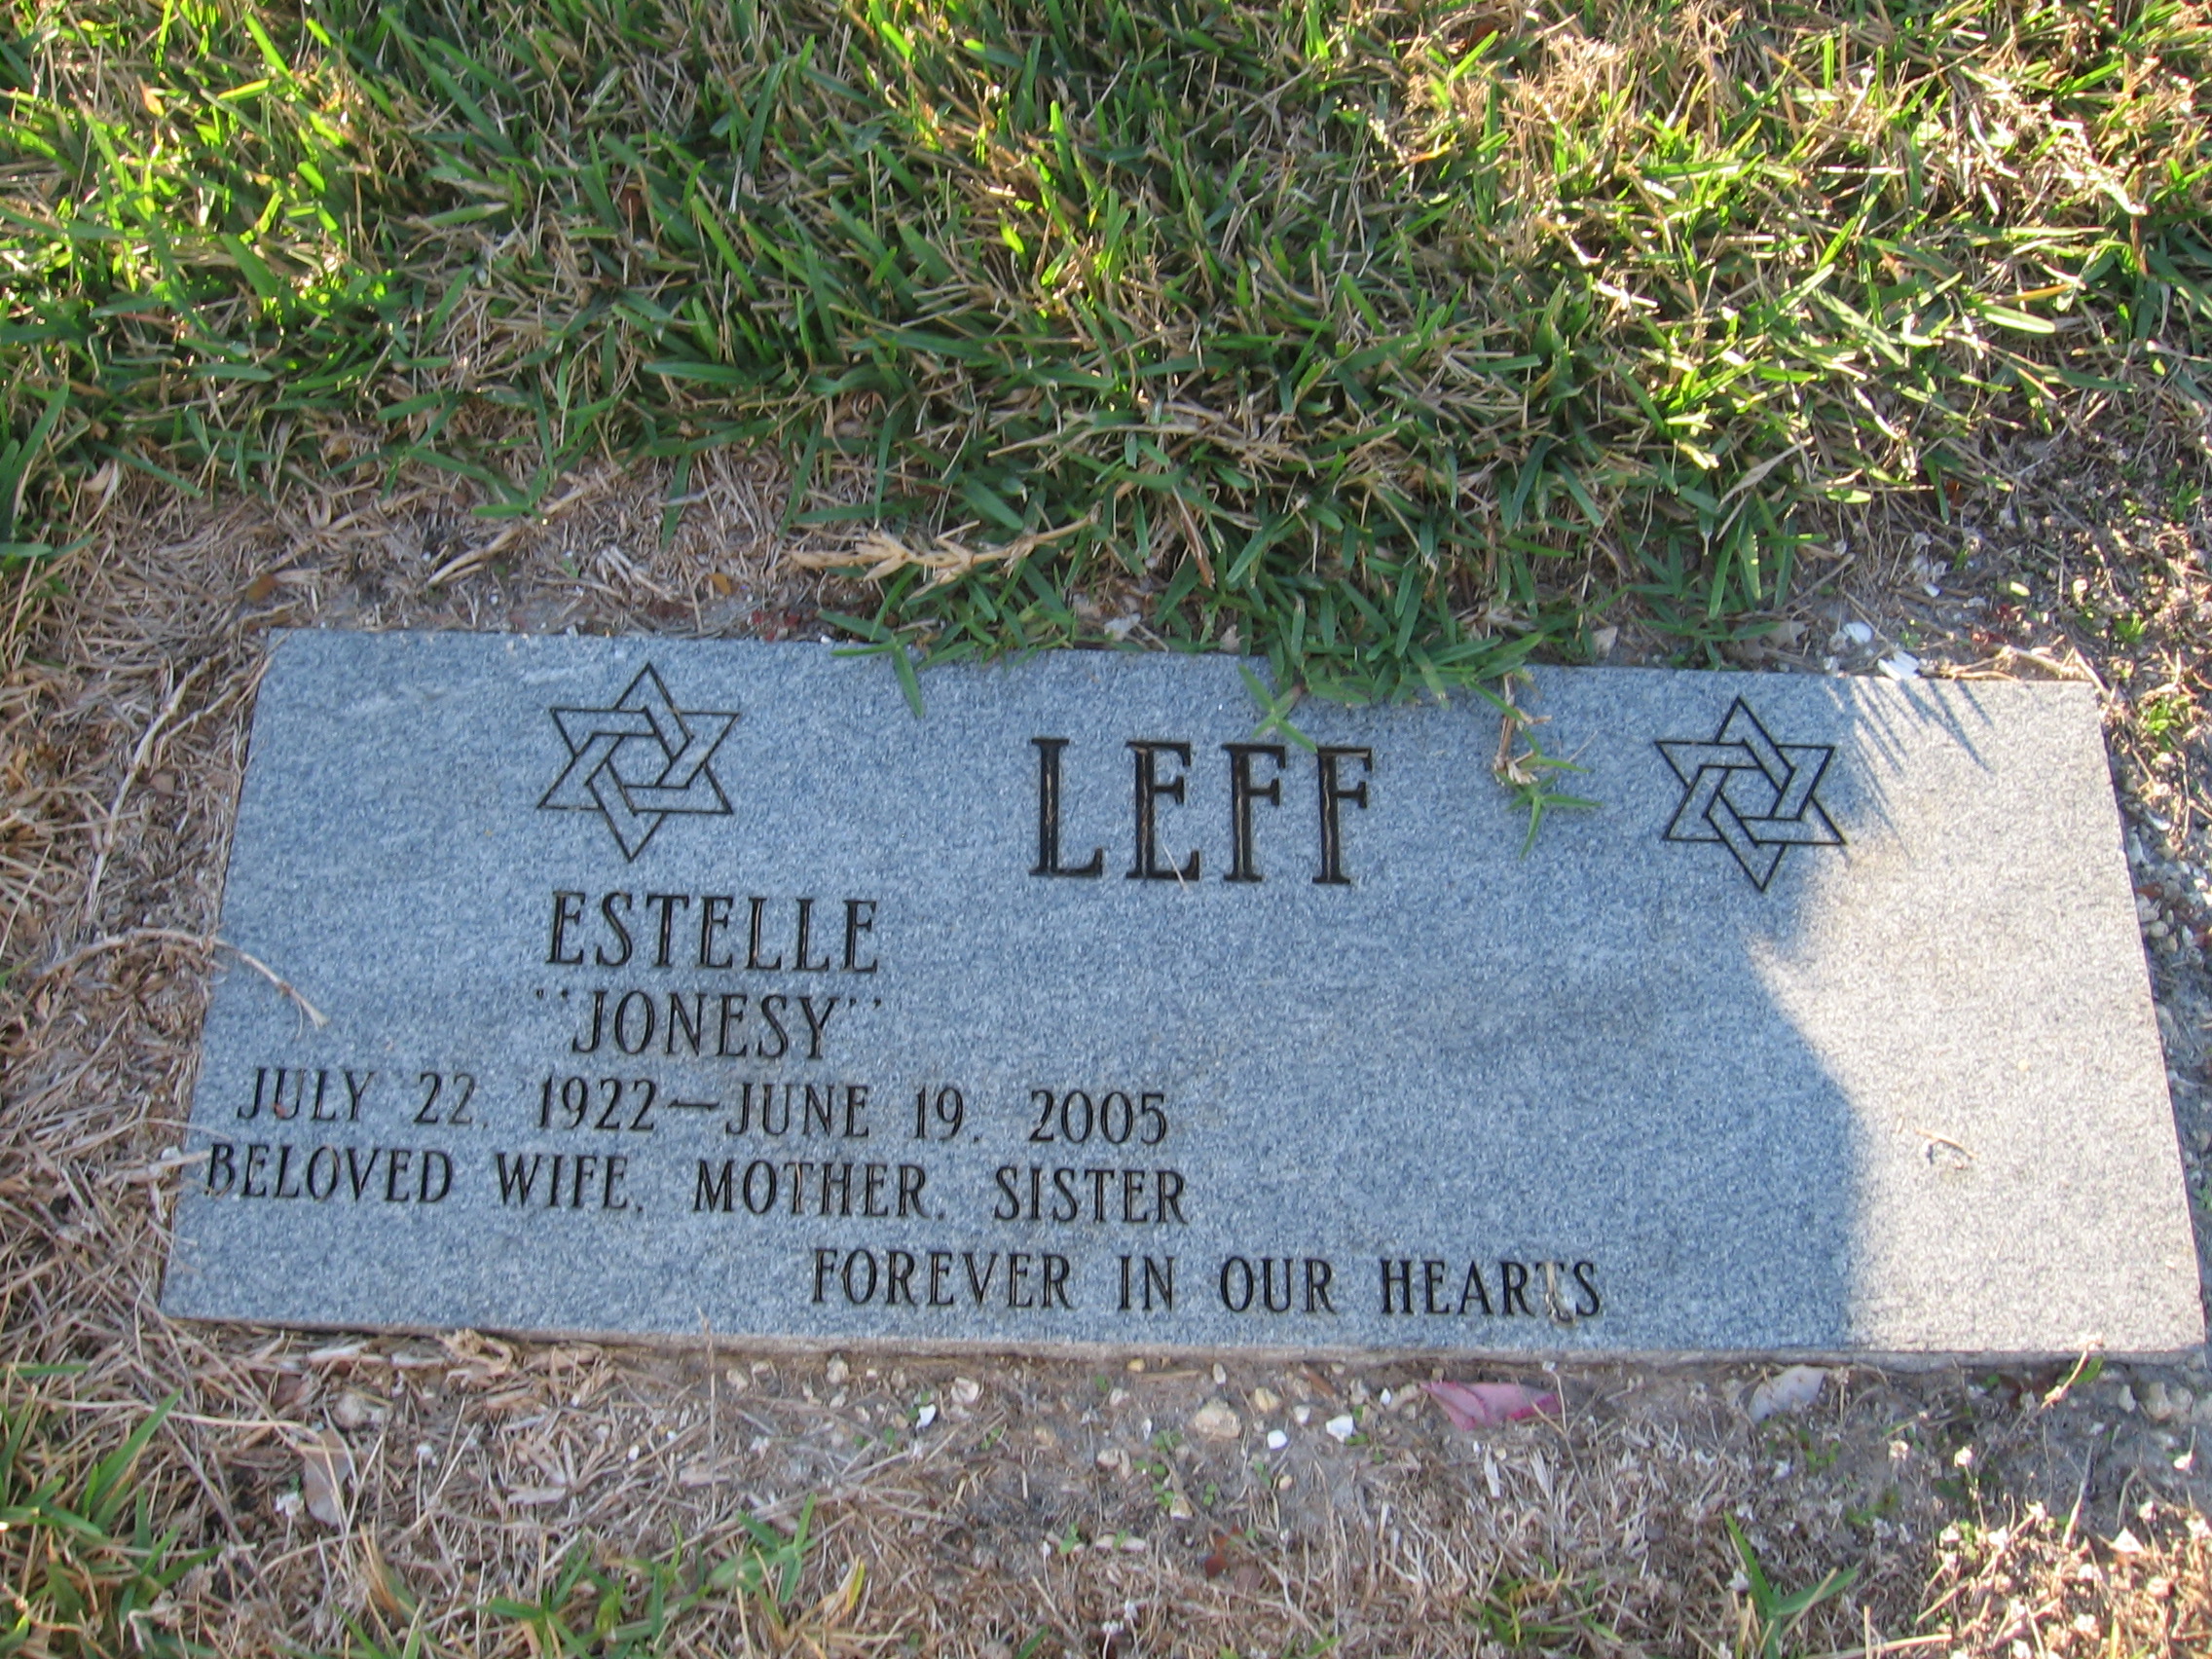 Estelle "Jonesy" Leff